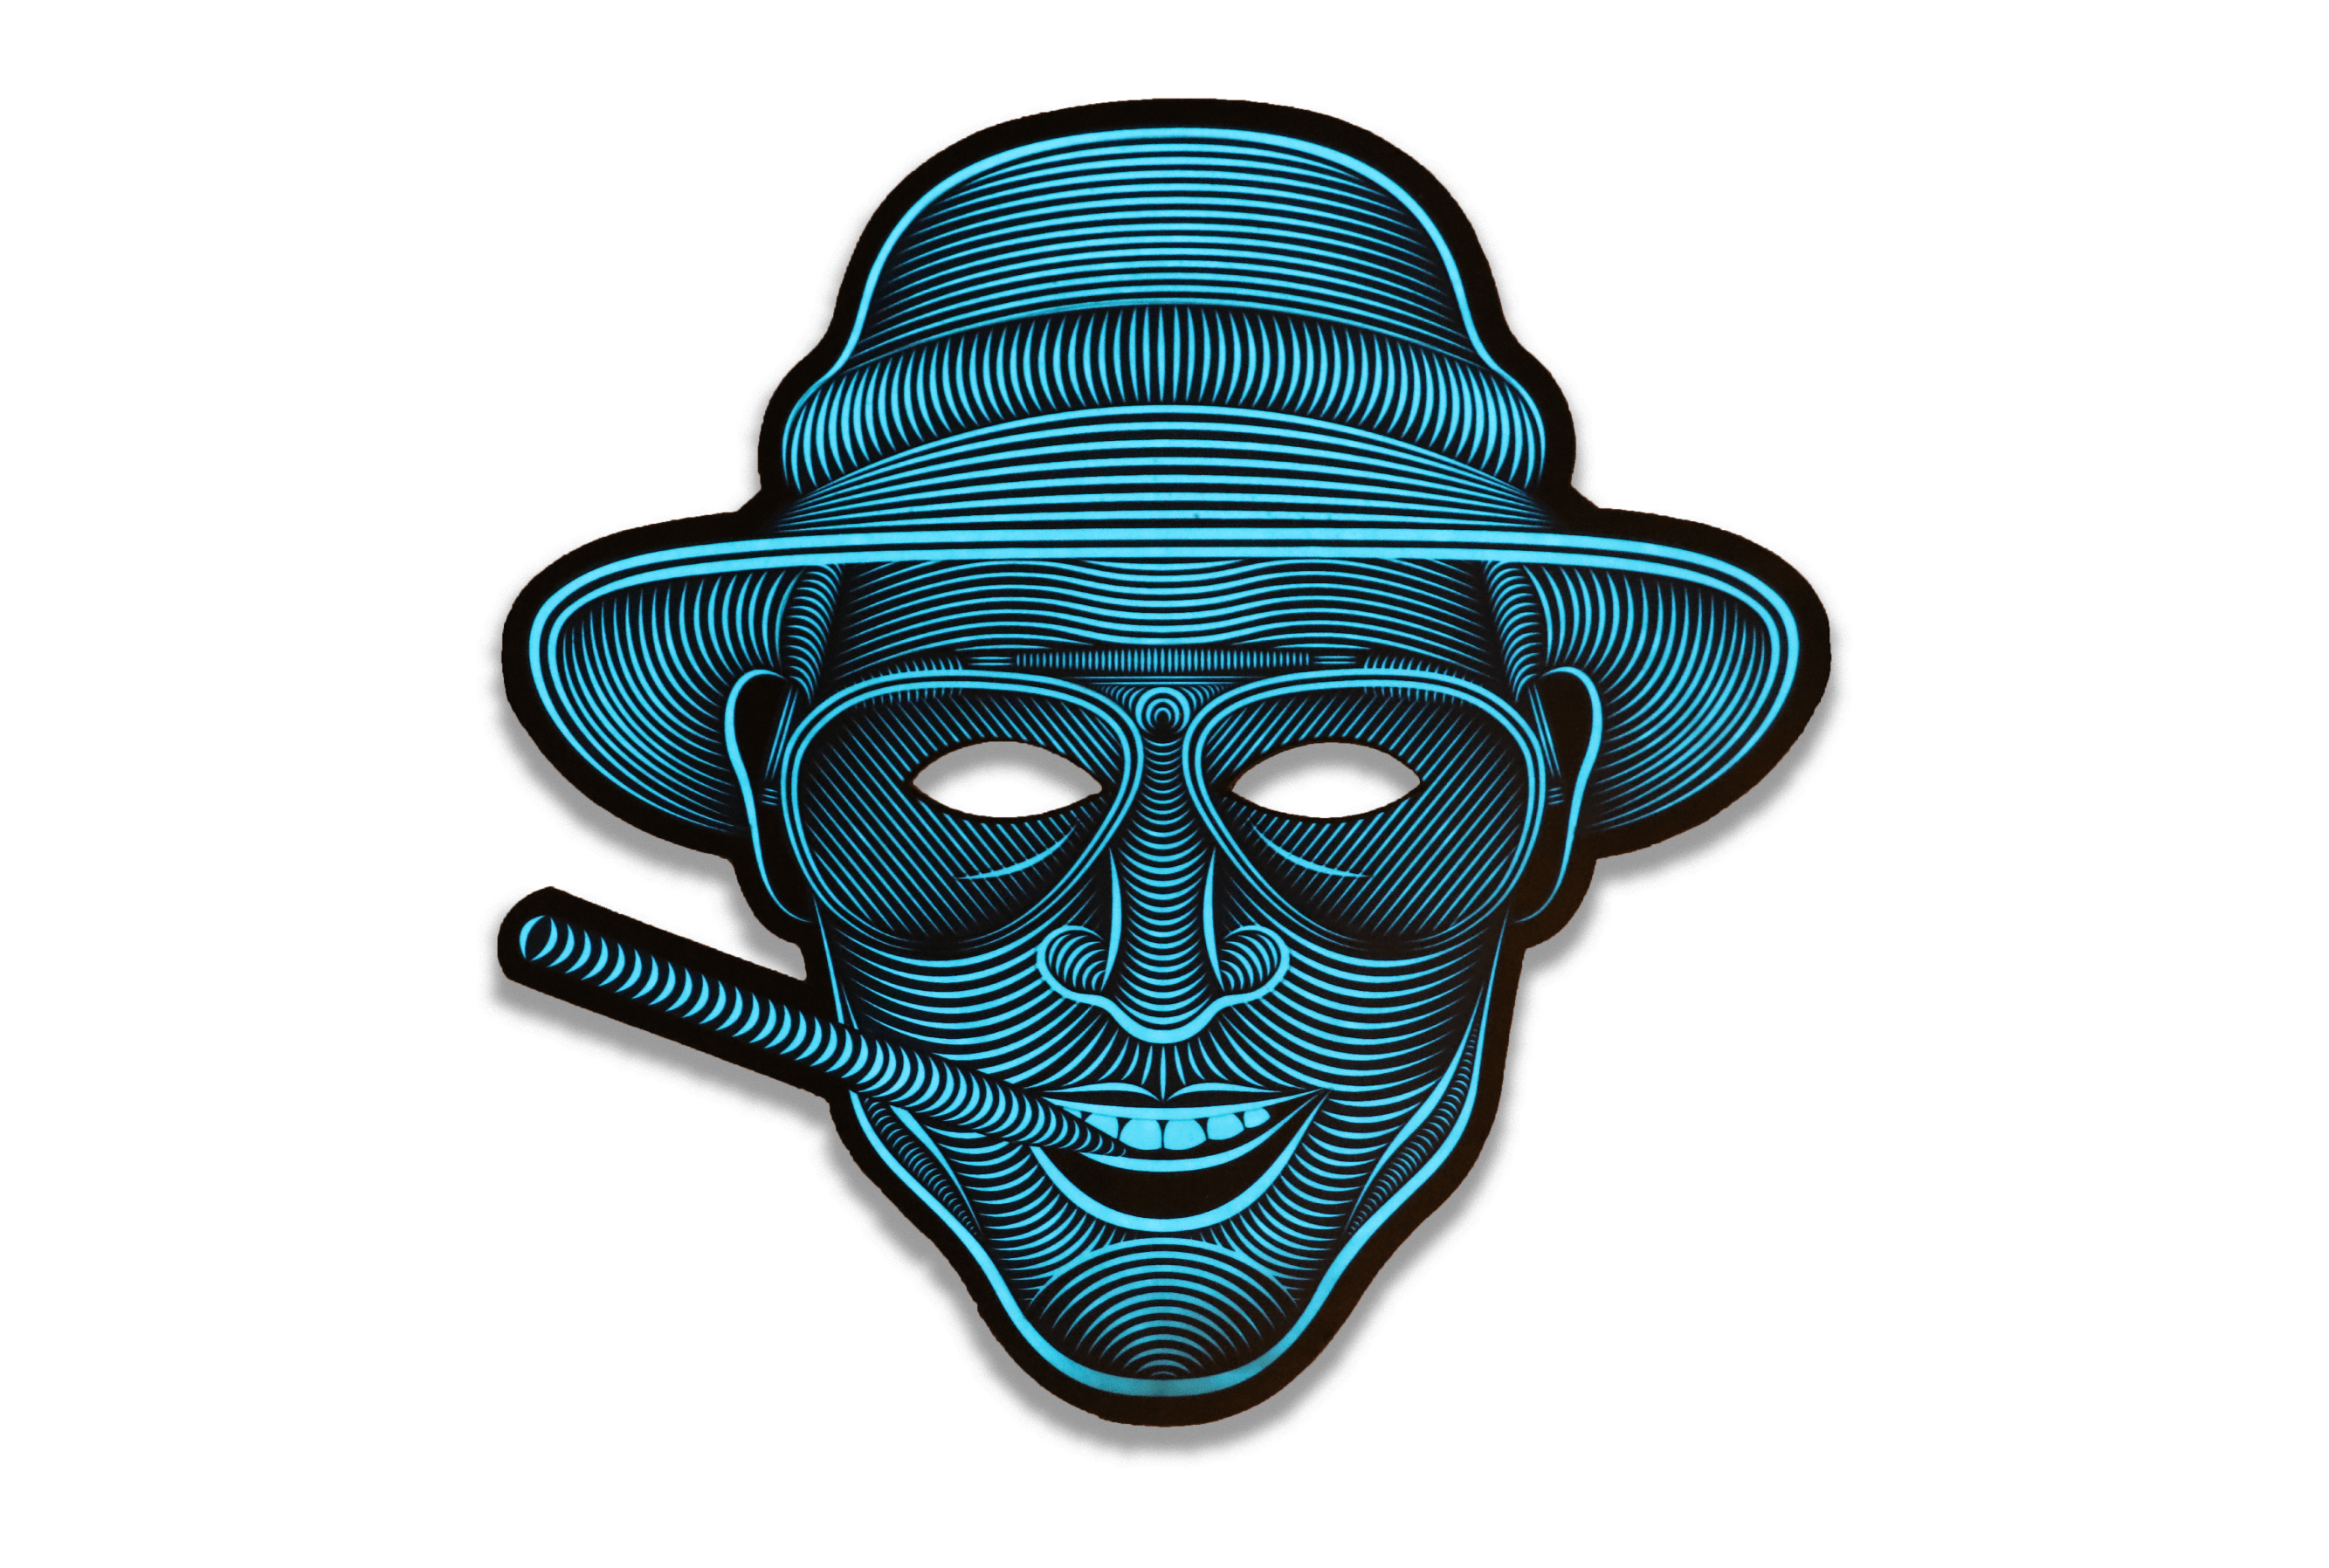 The Sound Reactive LED Mask | Indiegogo